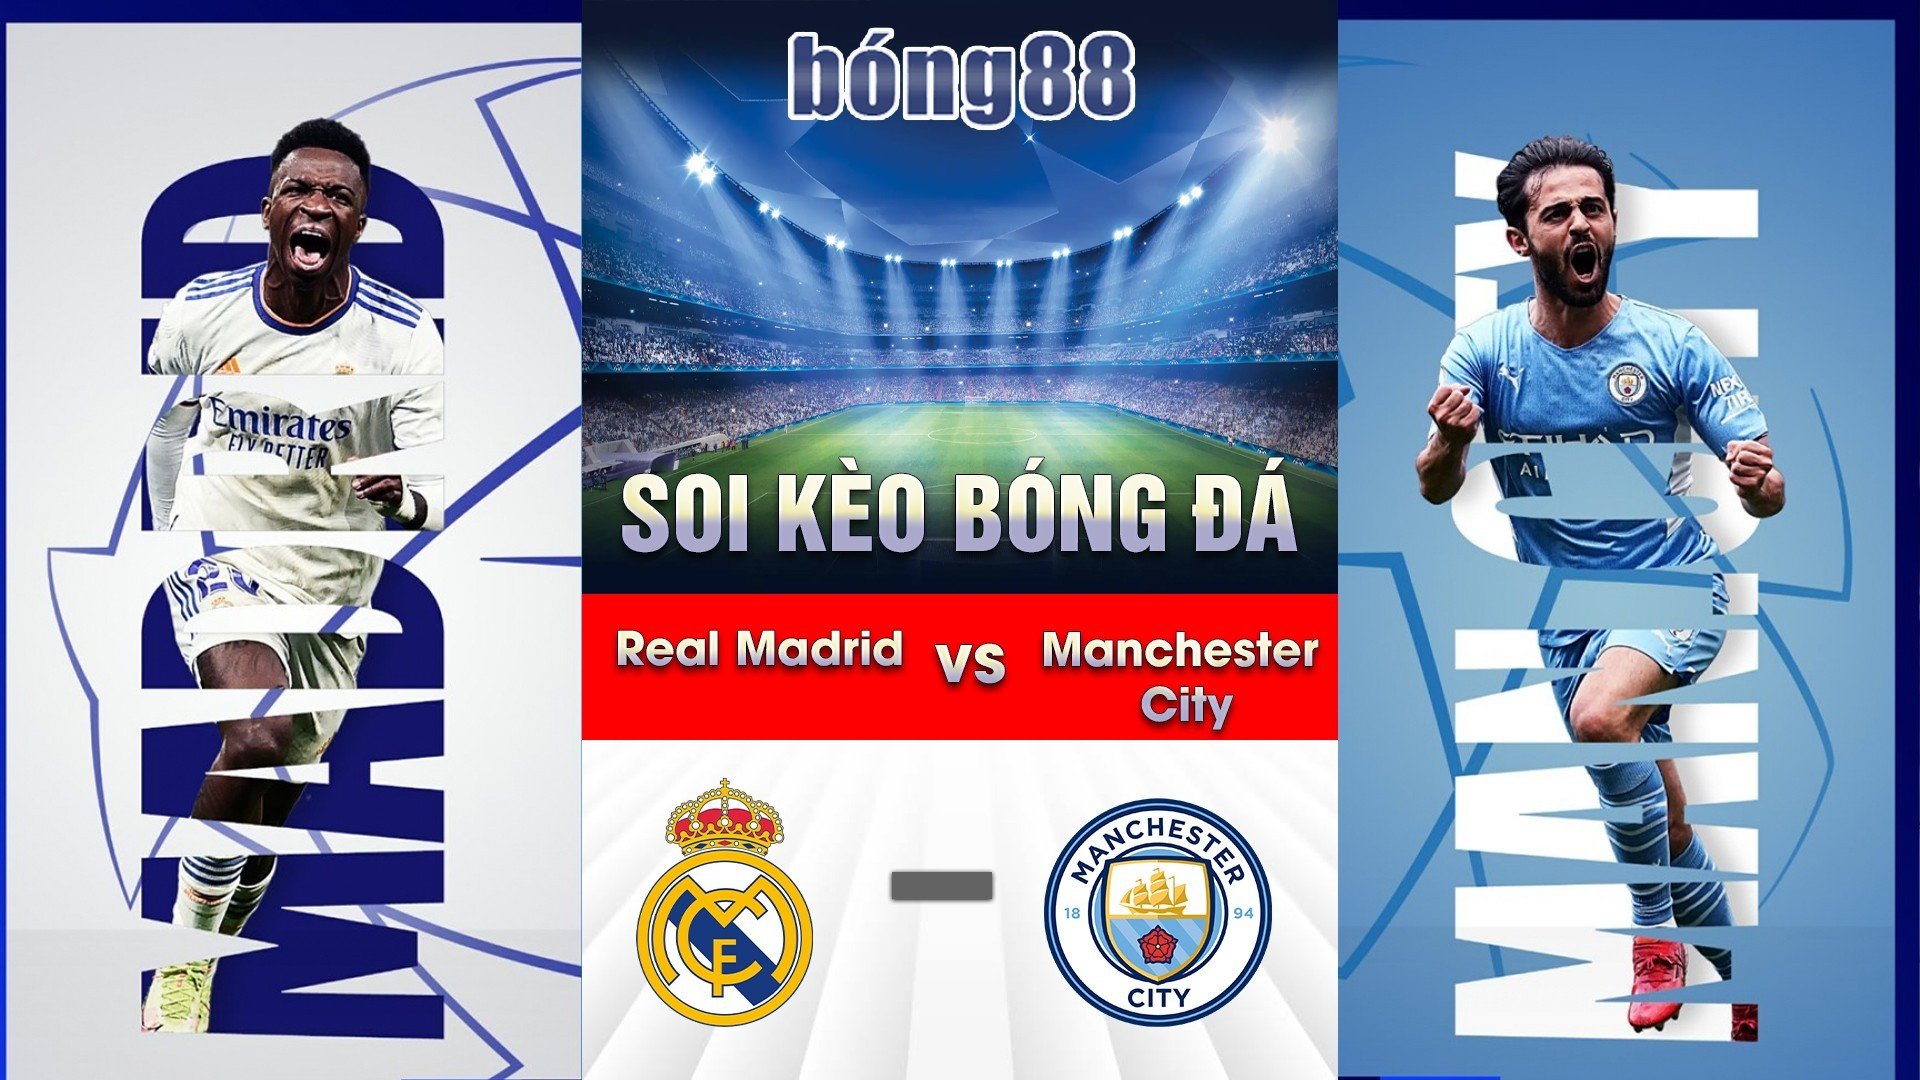 Soi kèo bóng đá giữa Real Madrid và Manchester City 01